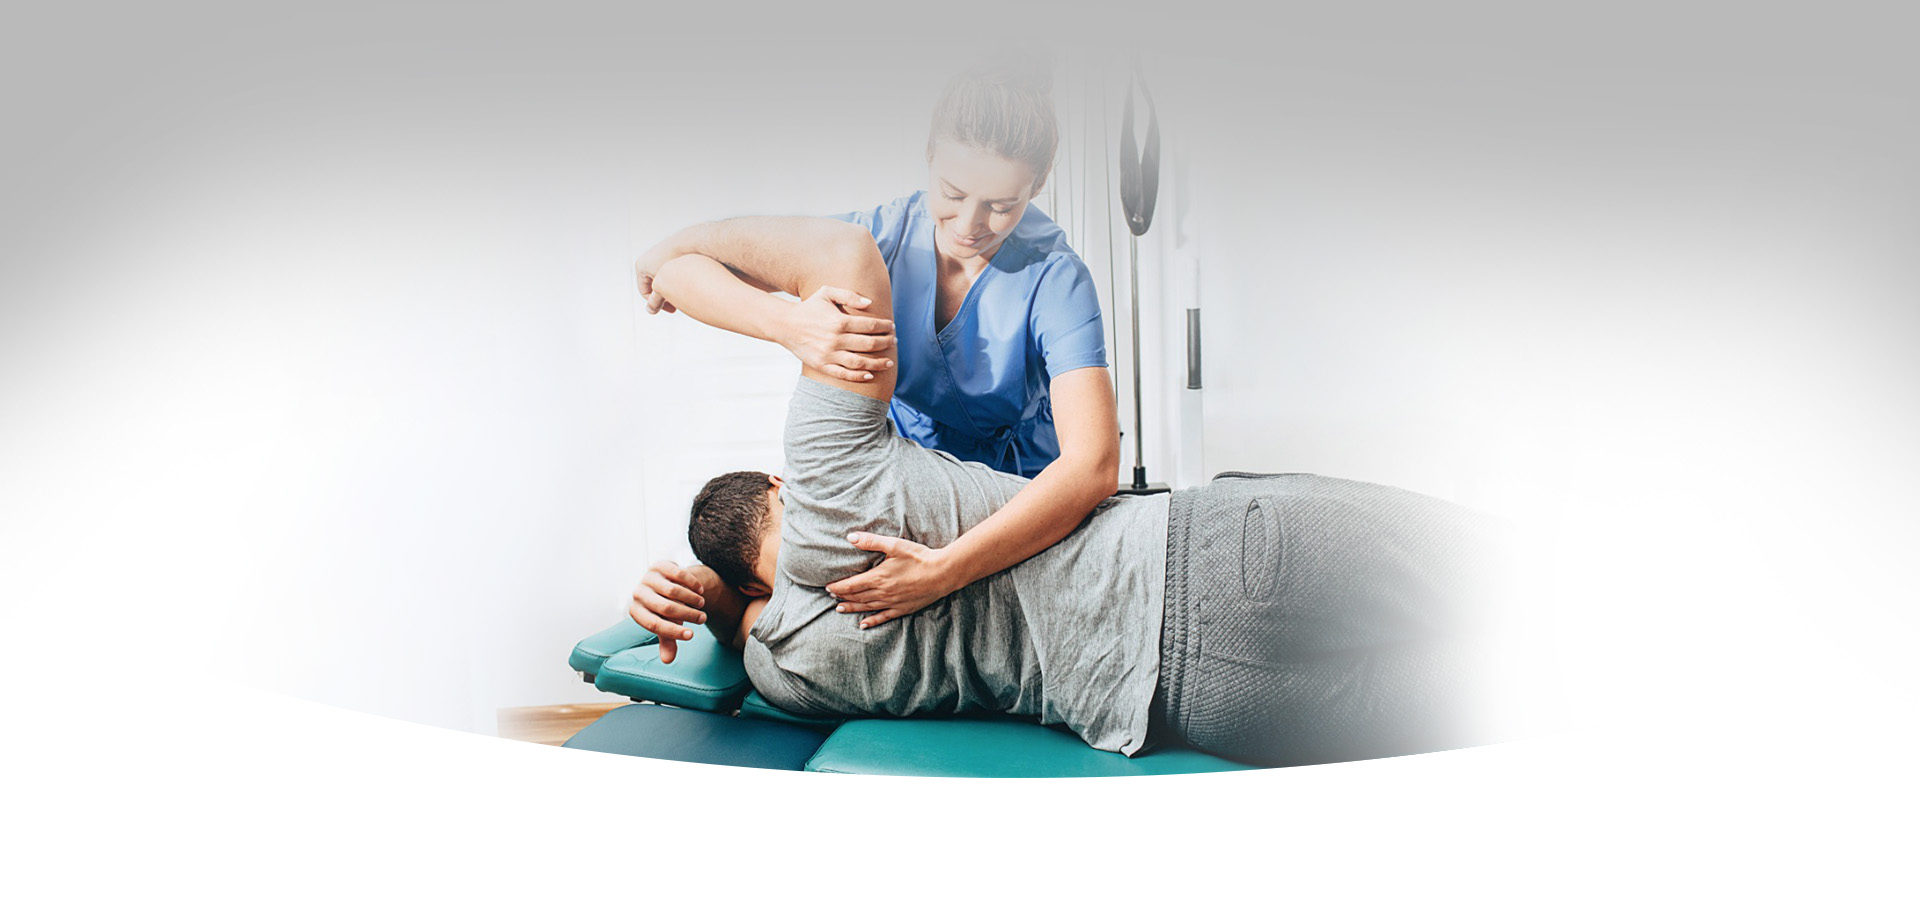 Pilates- fisioterapeuta auxiliando paciente com mobilidade das costas